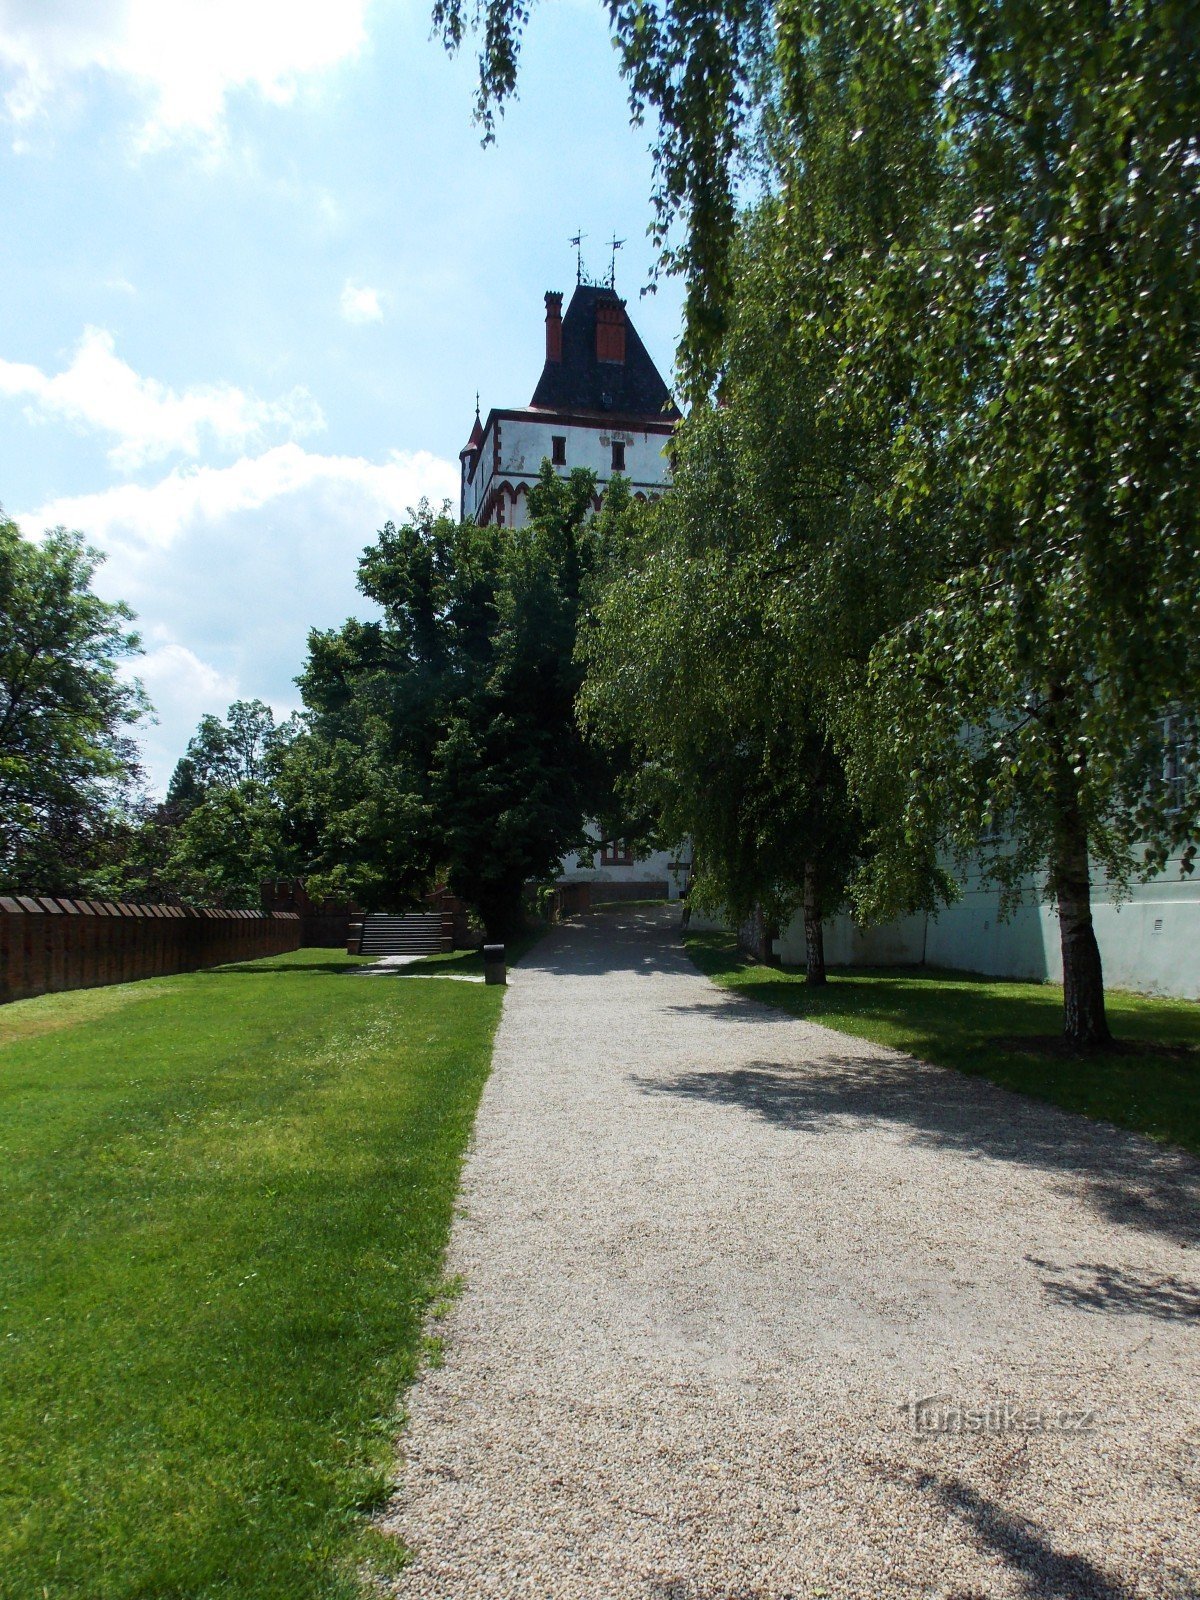 Bel vodni stolp v grajskem parku v Hradcu nad Moravicí